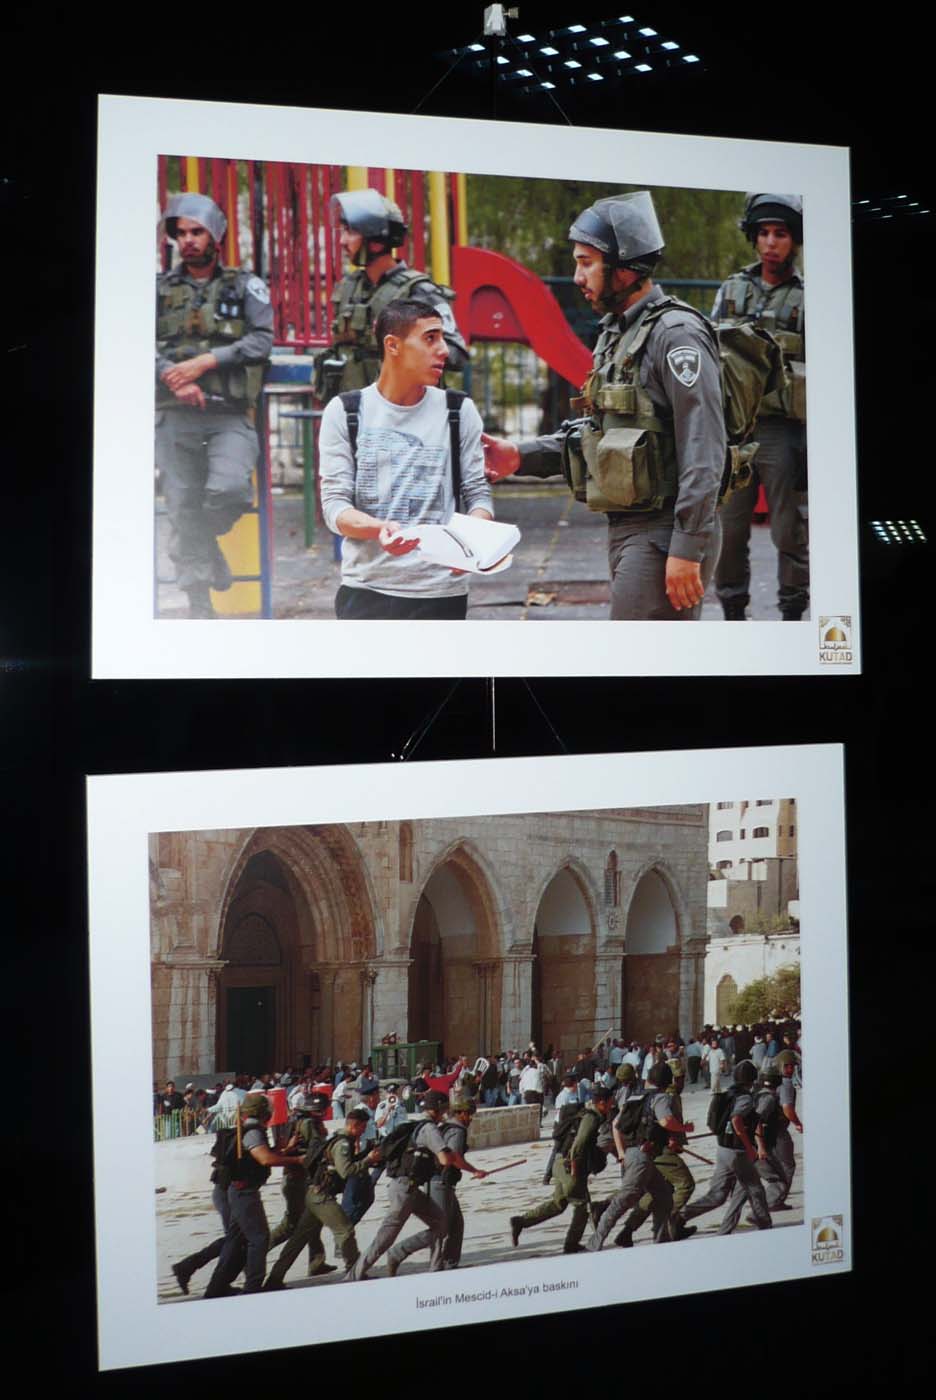 صور توضح معاناة الفلسطينيين في القدس